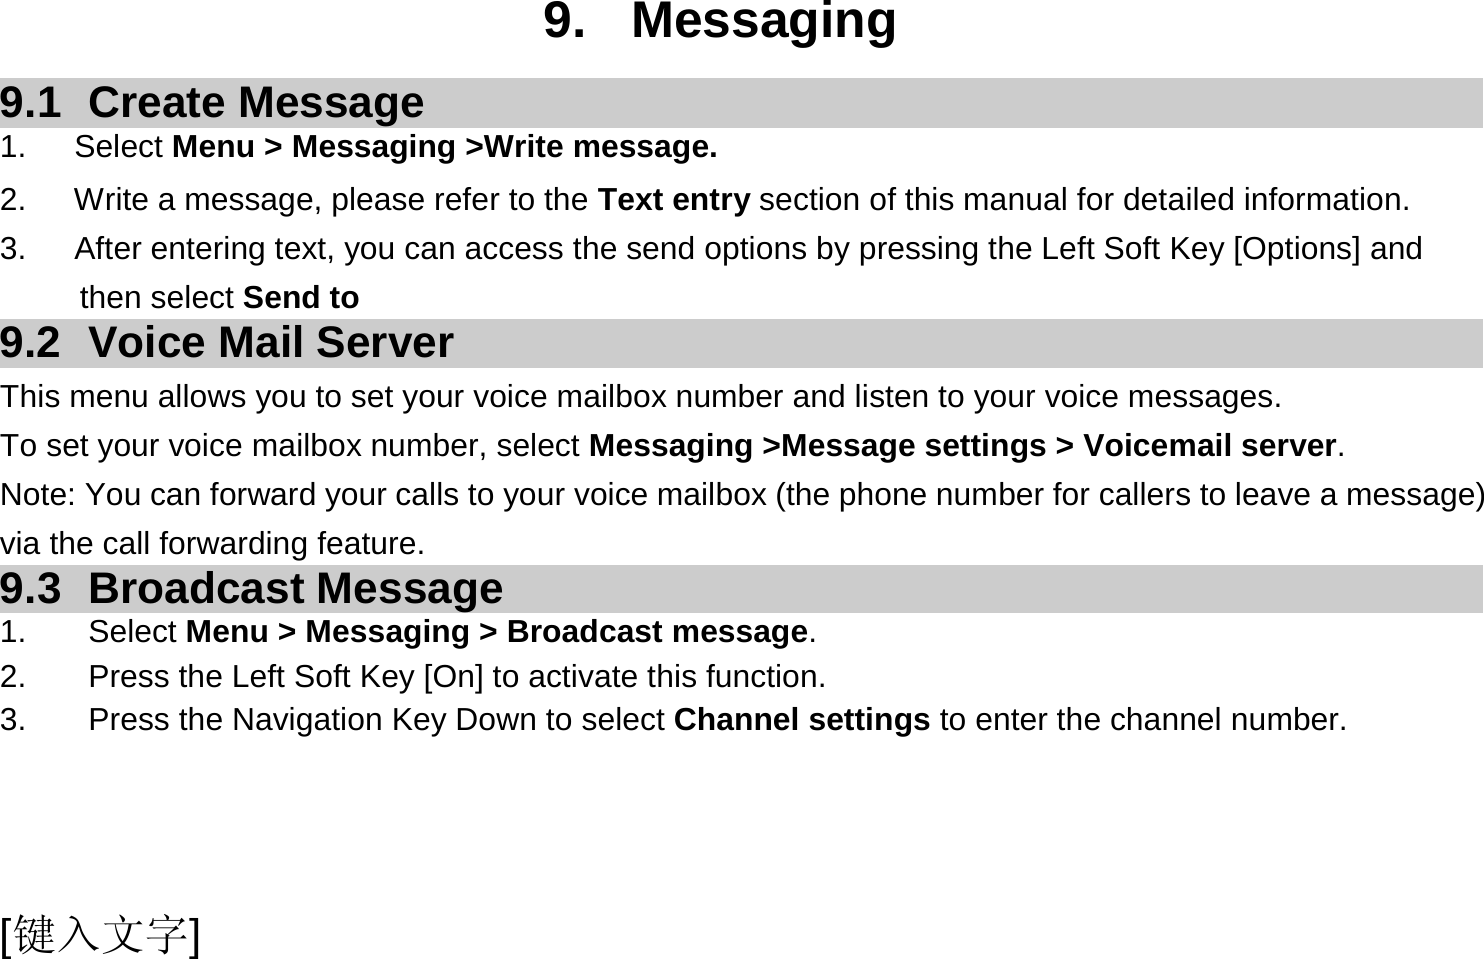  [键入文字]  9. Messaging 9.1 Create Message 1.   Select Menu &gt; Messaging &gt;Write message. 2.      Write a message, please refer to the Text entry section of this manual for detailed information. 3.      After entering text, you can access the send options by pressing the Left Soft Key [Options] and then select Send to 9.2  Voice Mail Server This menu allows you to set your voice mailbox number and listen to your voice messages. To set your voice mailbox number, select Messaging &gt;Message settings &gt; Voicemail server. Note: You can forward your calls to your voice mailbox (the phone number for callers to leave a message) via the call forwarding feature. 9.3 Broadcast Message 1. Select Menu &gt; Messaging &gt; Broadcast message. 2.  Press the Left Soft Key [On] to activate this function. 3.  Press the Navigation Key Down to select Channel settings to enter the channel number.  